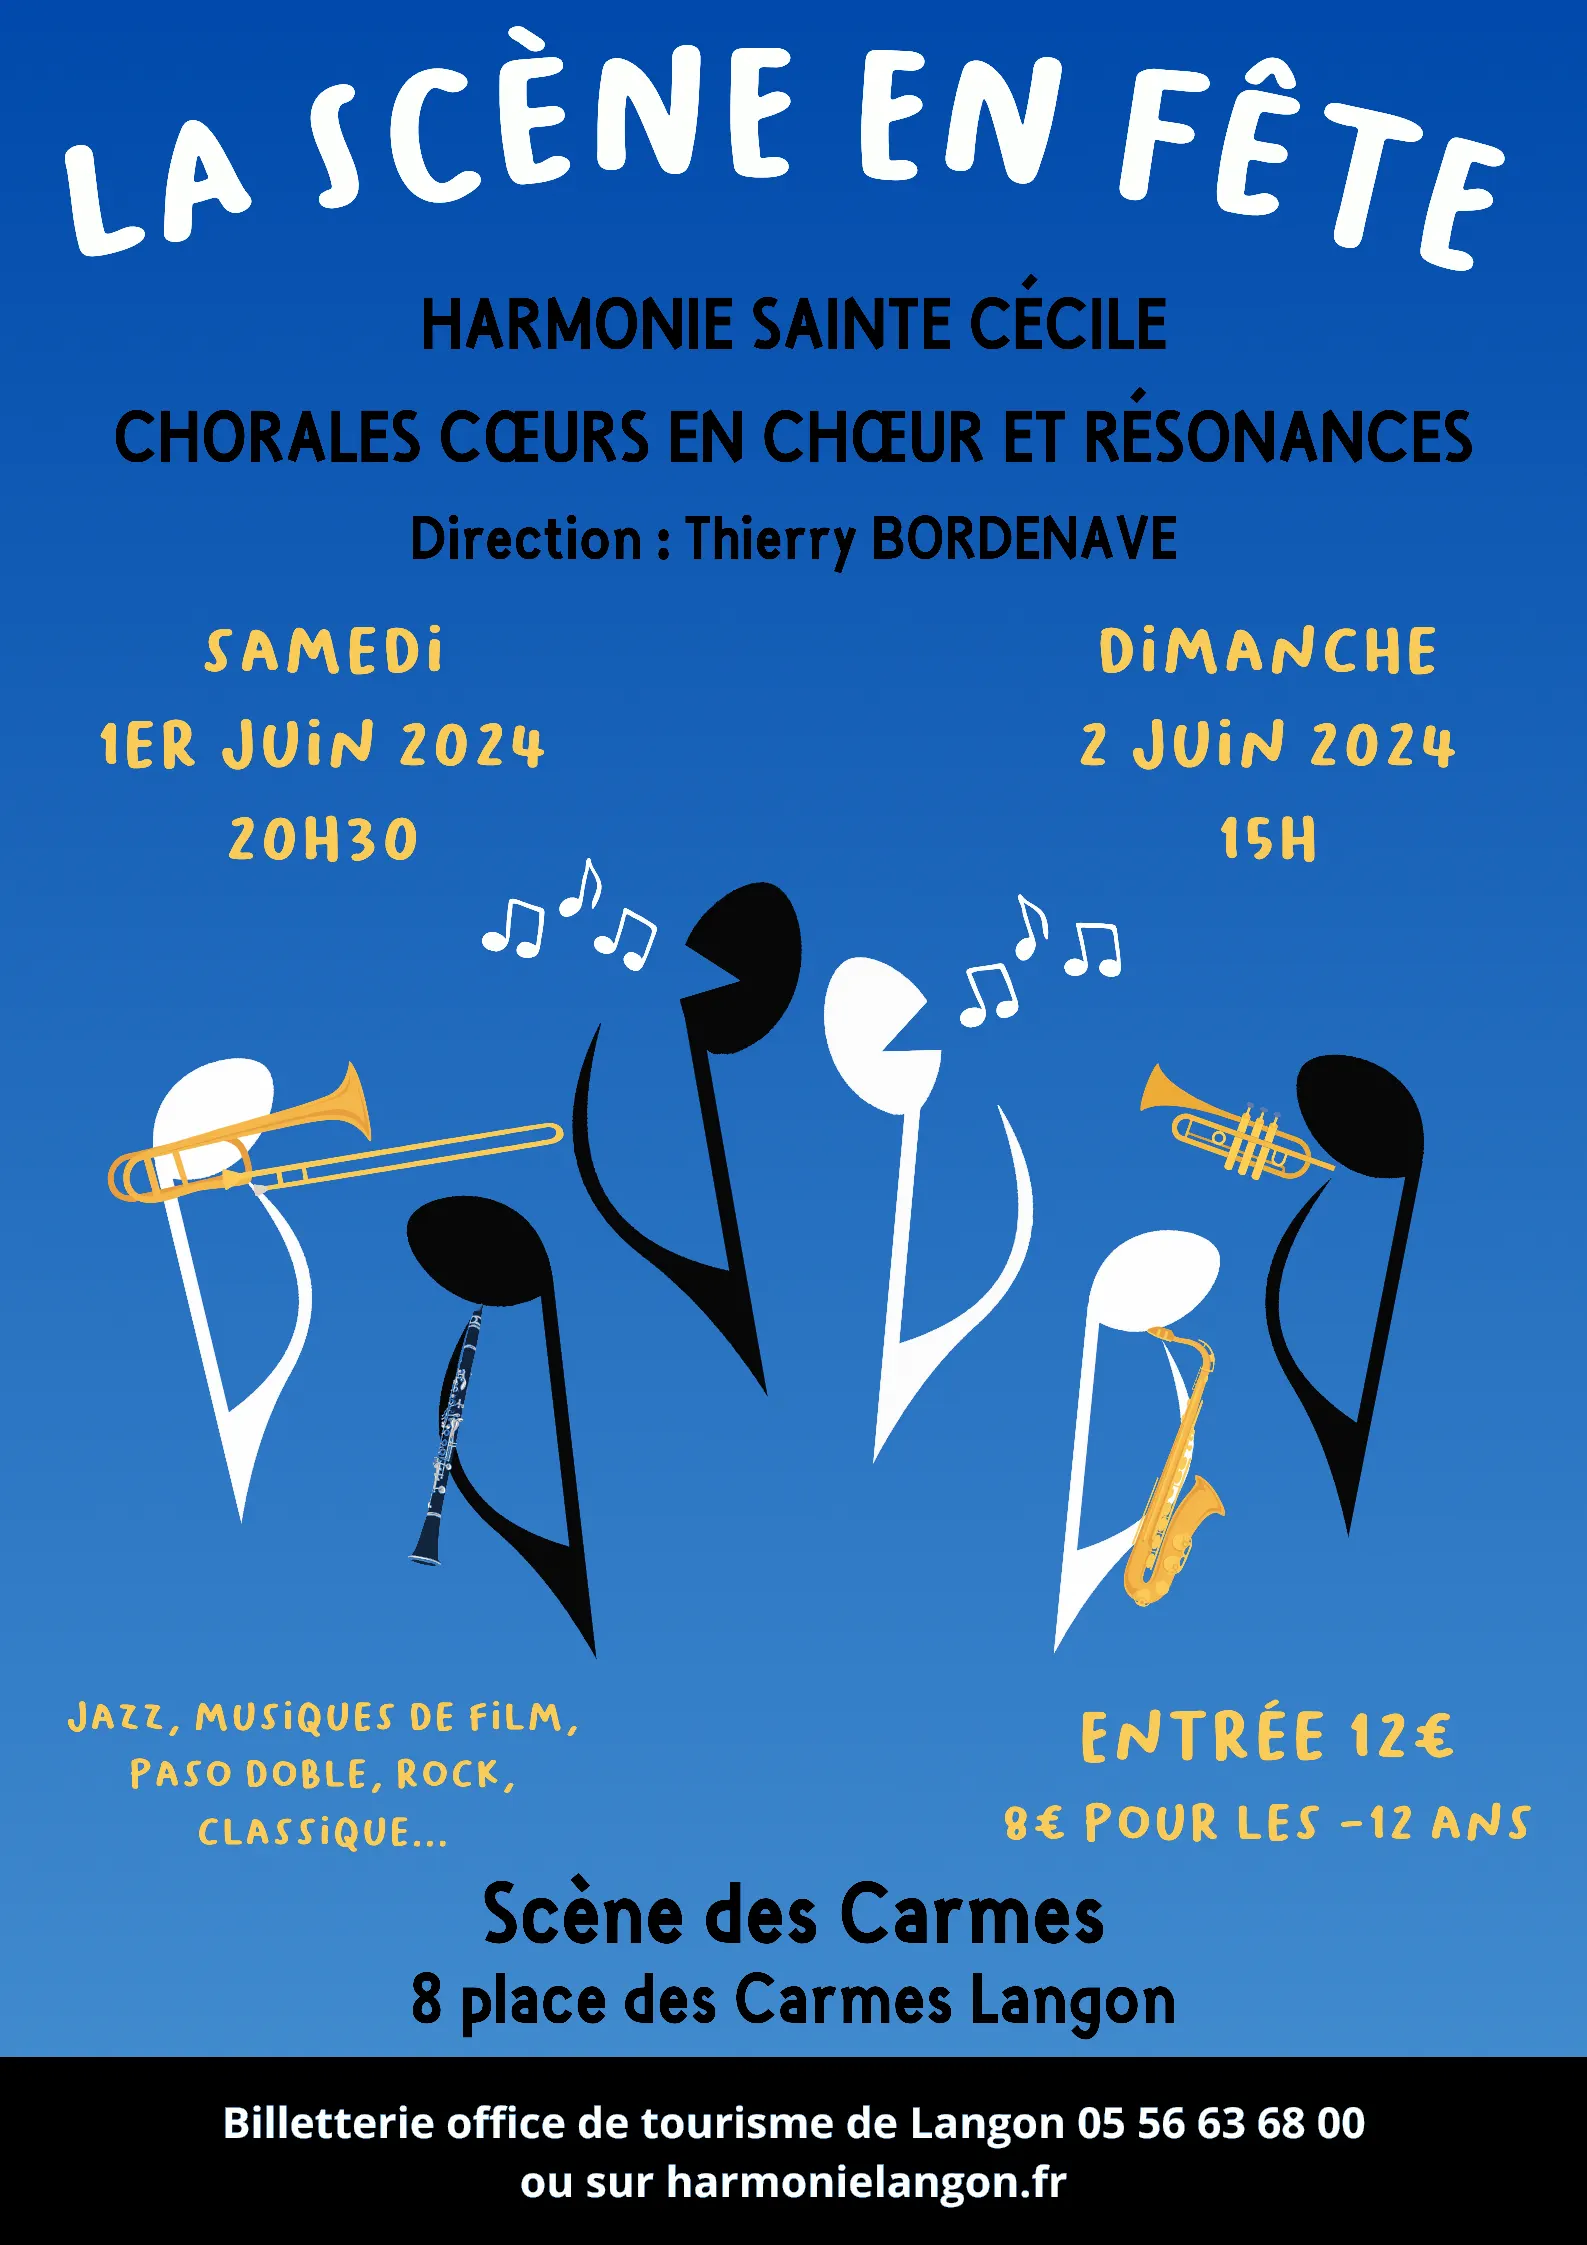 Flyer des concerts La Scène en Fête en juin 2024 au Centre Culturel des Carmes de Langon.